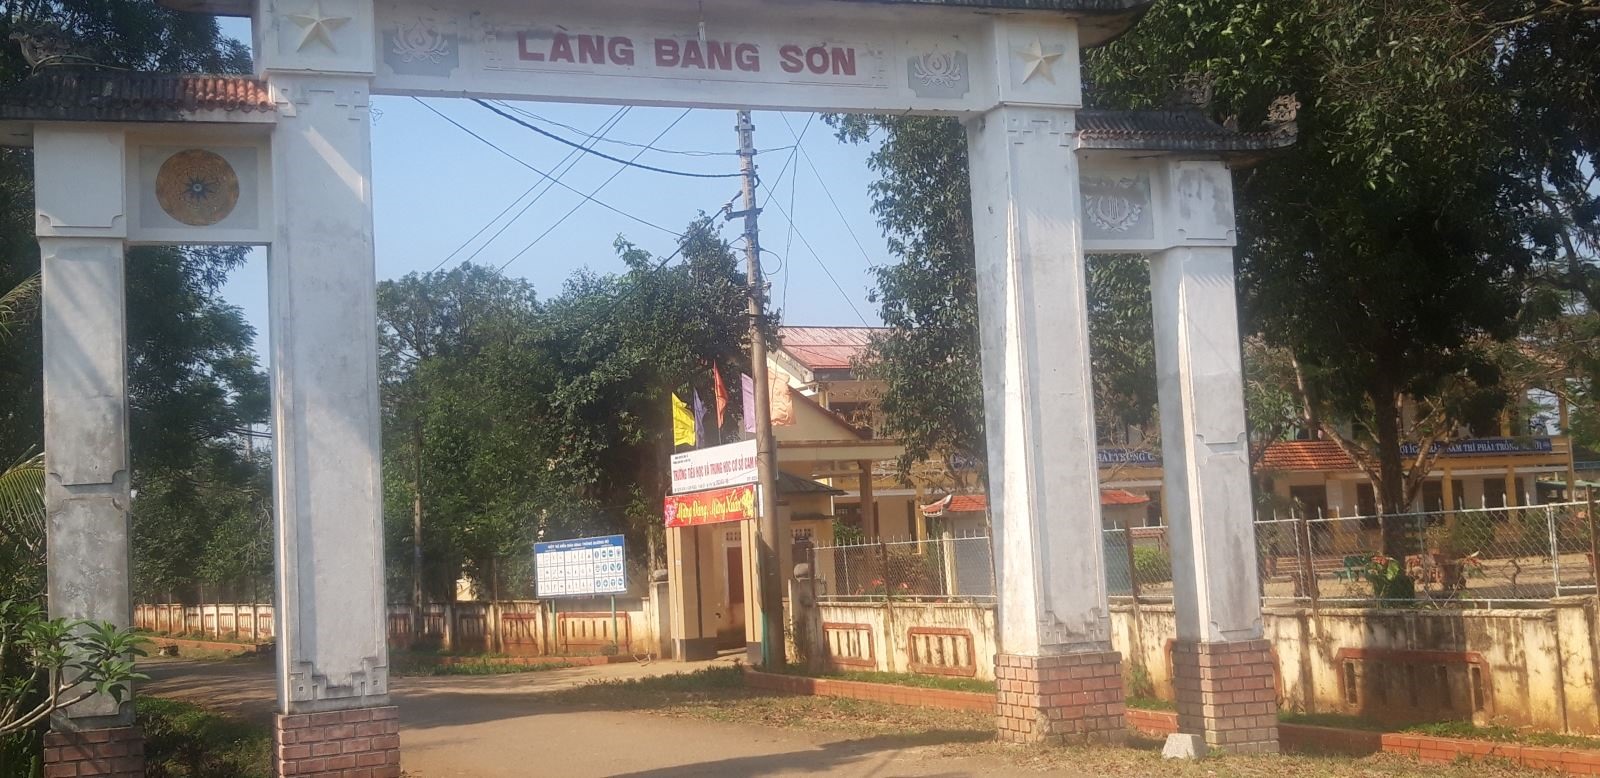 Cổng làng Bảng Sơn, xã Cam Nghĩa huyện Cam Lộ